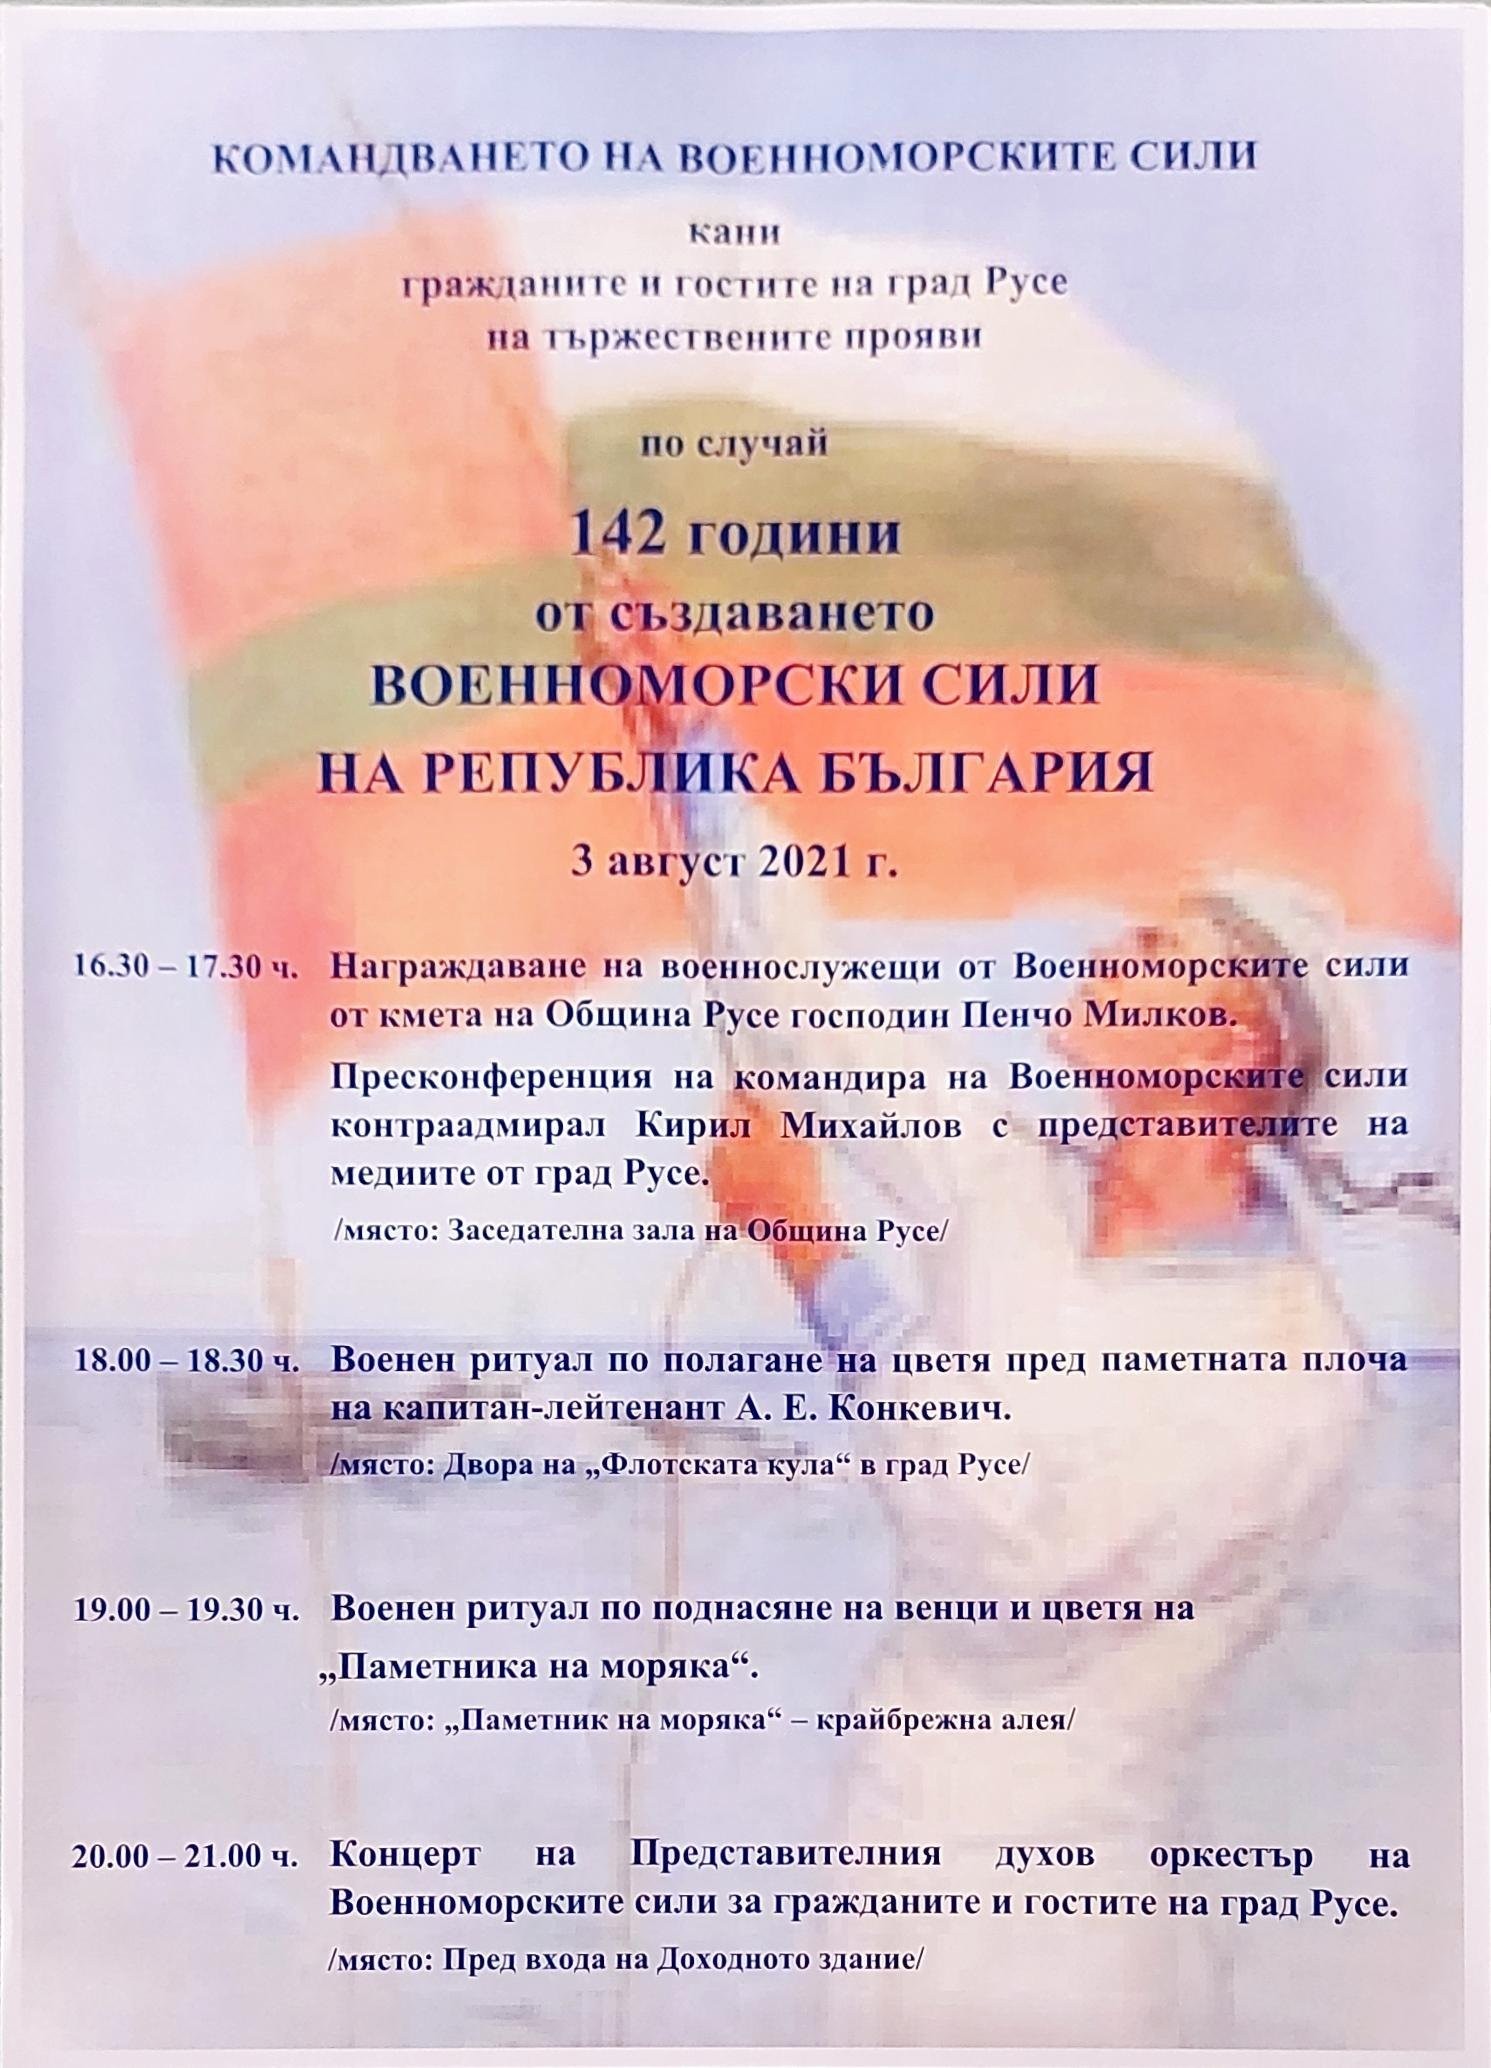  Русе ще  отбележи 142-годишнината от създаването на Военноморските сили в България